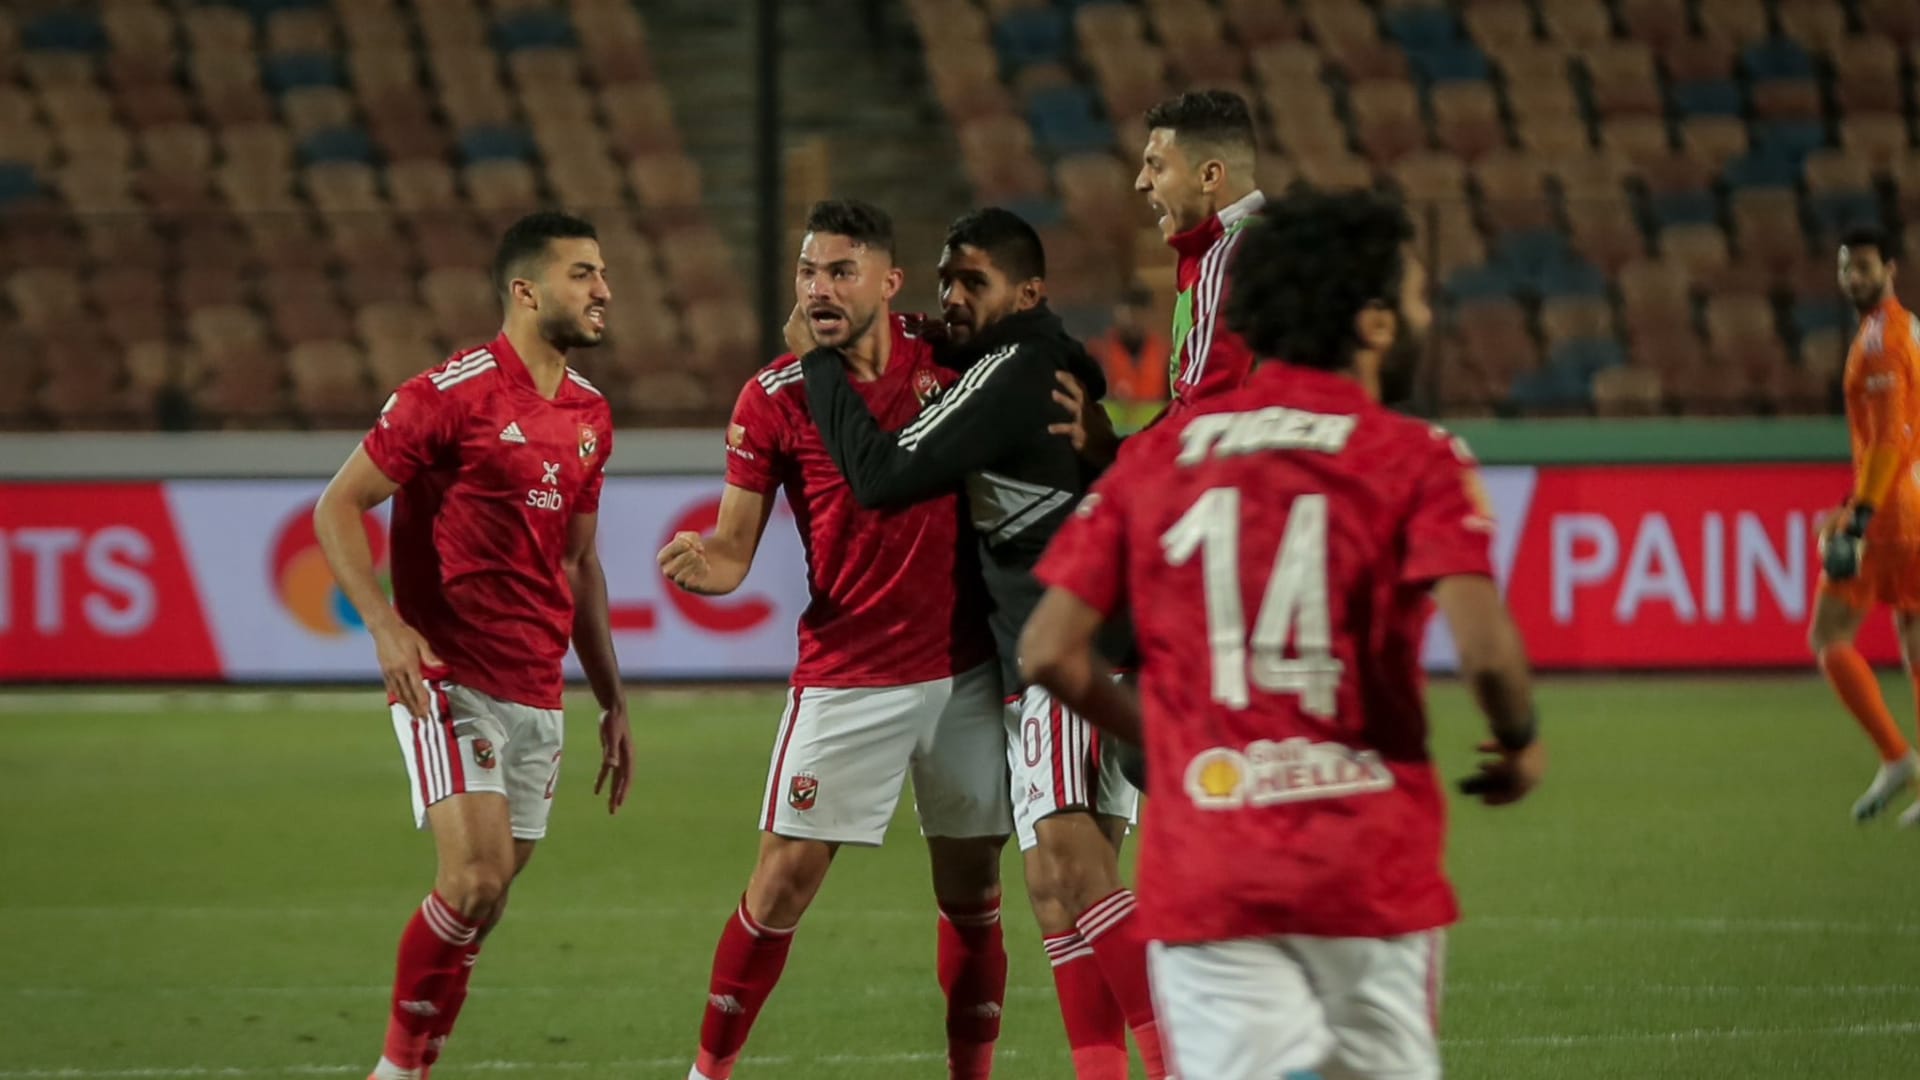 كأس مصر: الأهلي يظفر باللقب الـ 38 بعد لعب 120 دقيقة.. وإشادات باللاعب مروان عطية